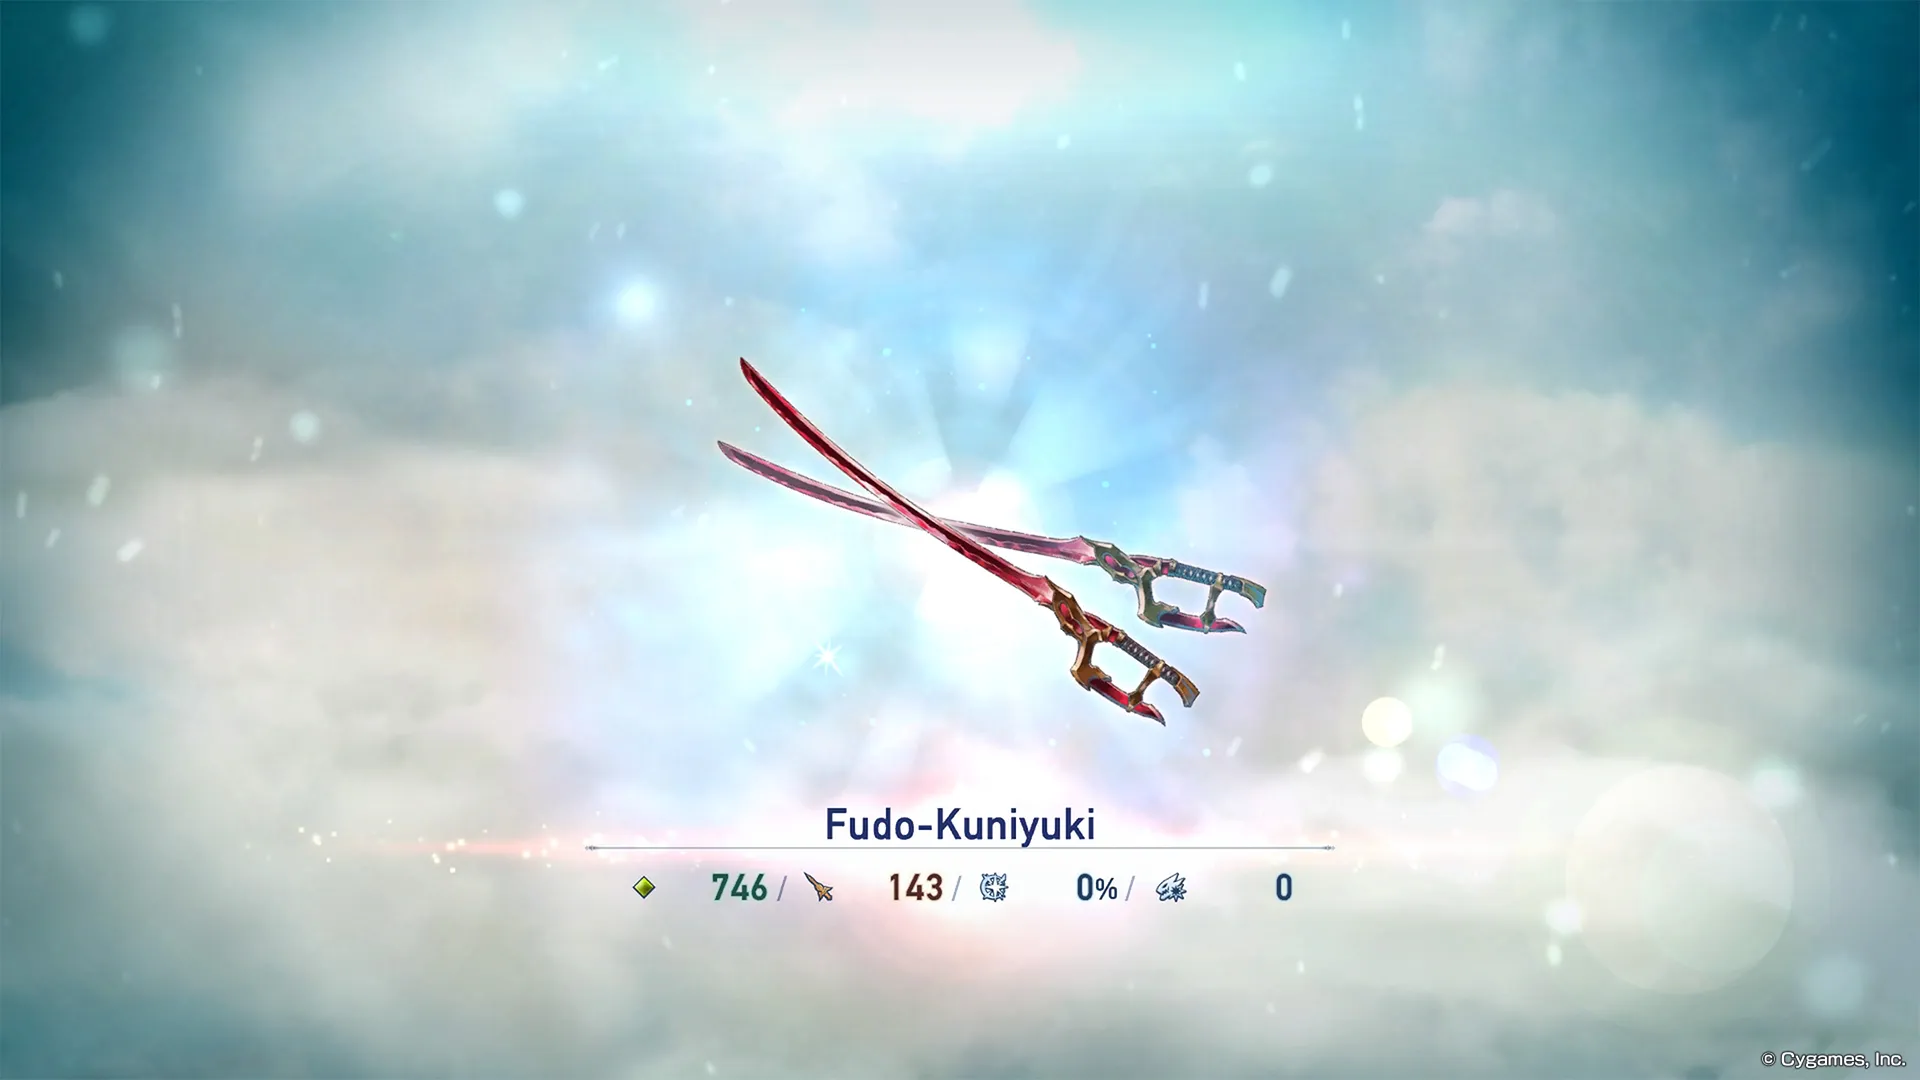 arma de ascensión de yodarha fudo-kuniyuki siendo forjada